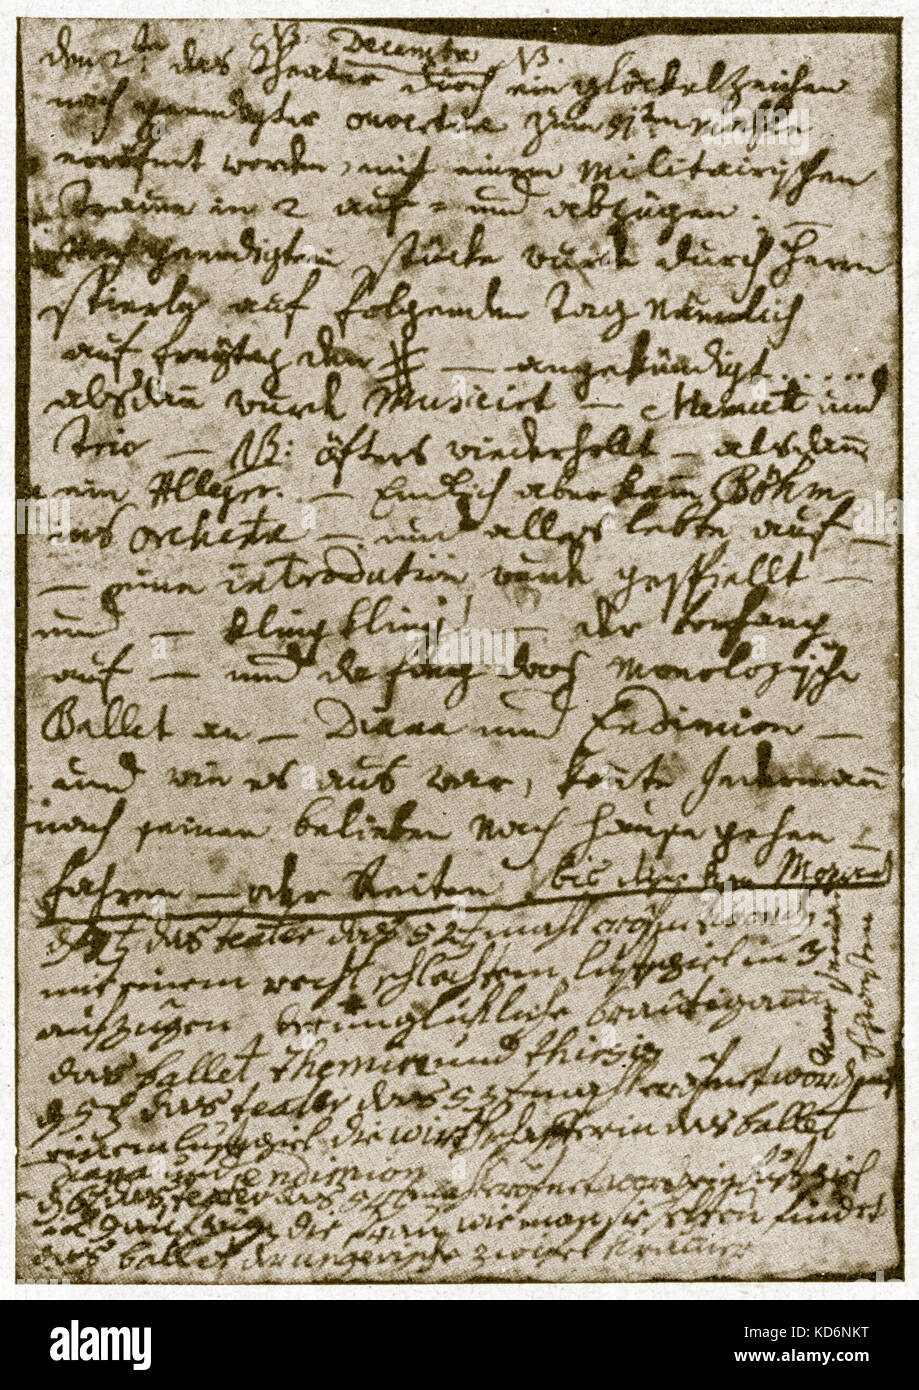 Pagina estratto da Nannerl's Diary - Wolfgang Amadeus Mozart - sorella datata 1779. Mozart, il compositore austriaco, 27 Gennaio 1756 - 5 dicembre 1791. Foto Stock